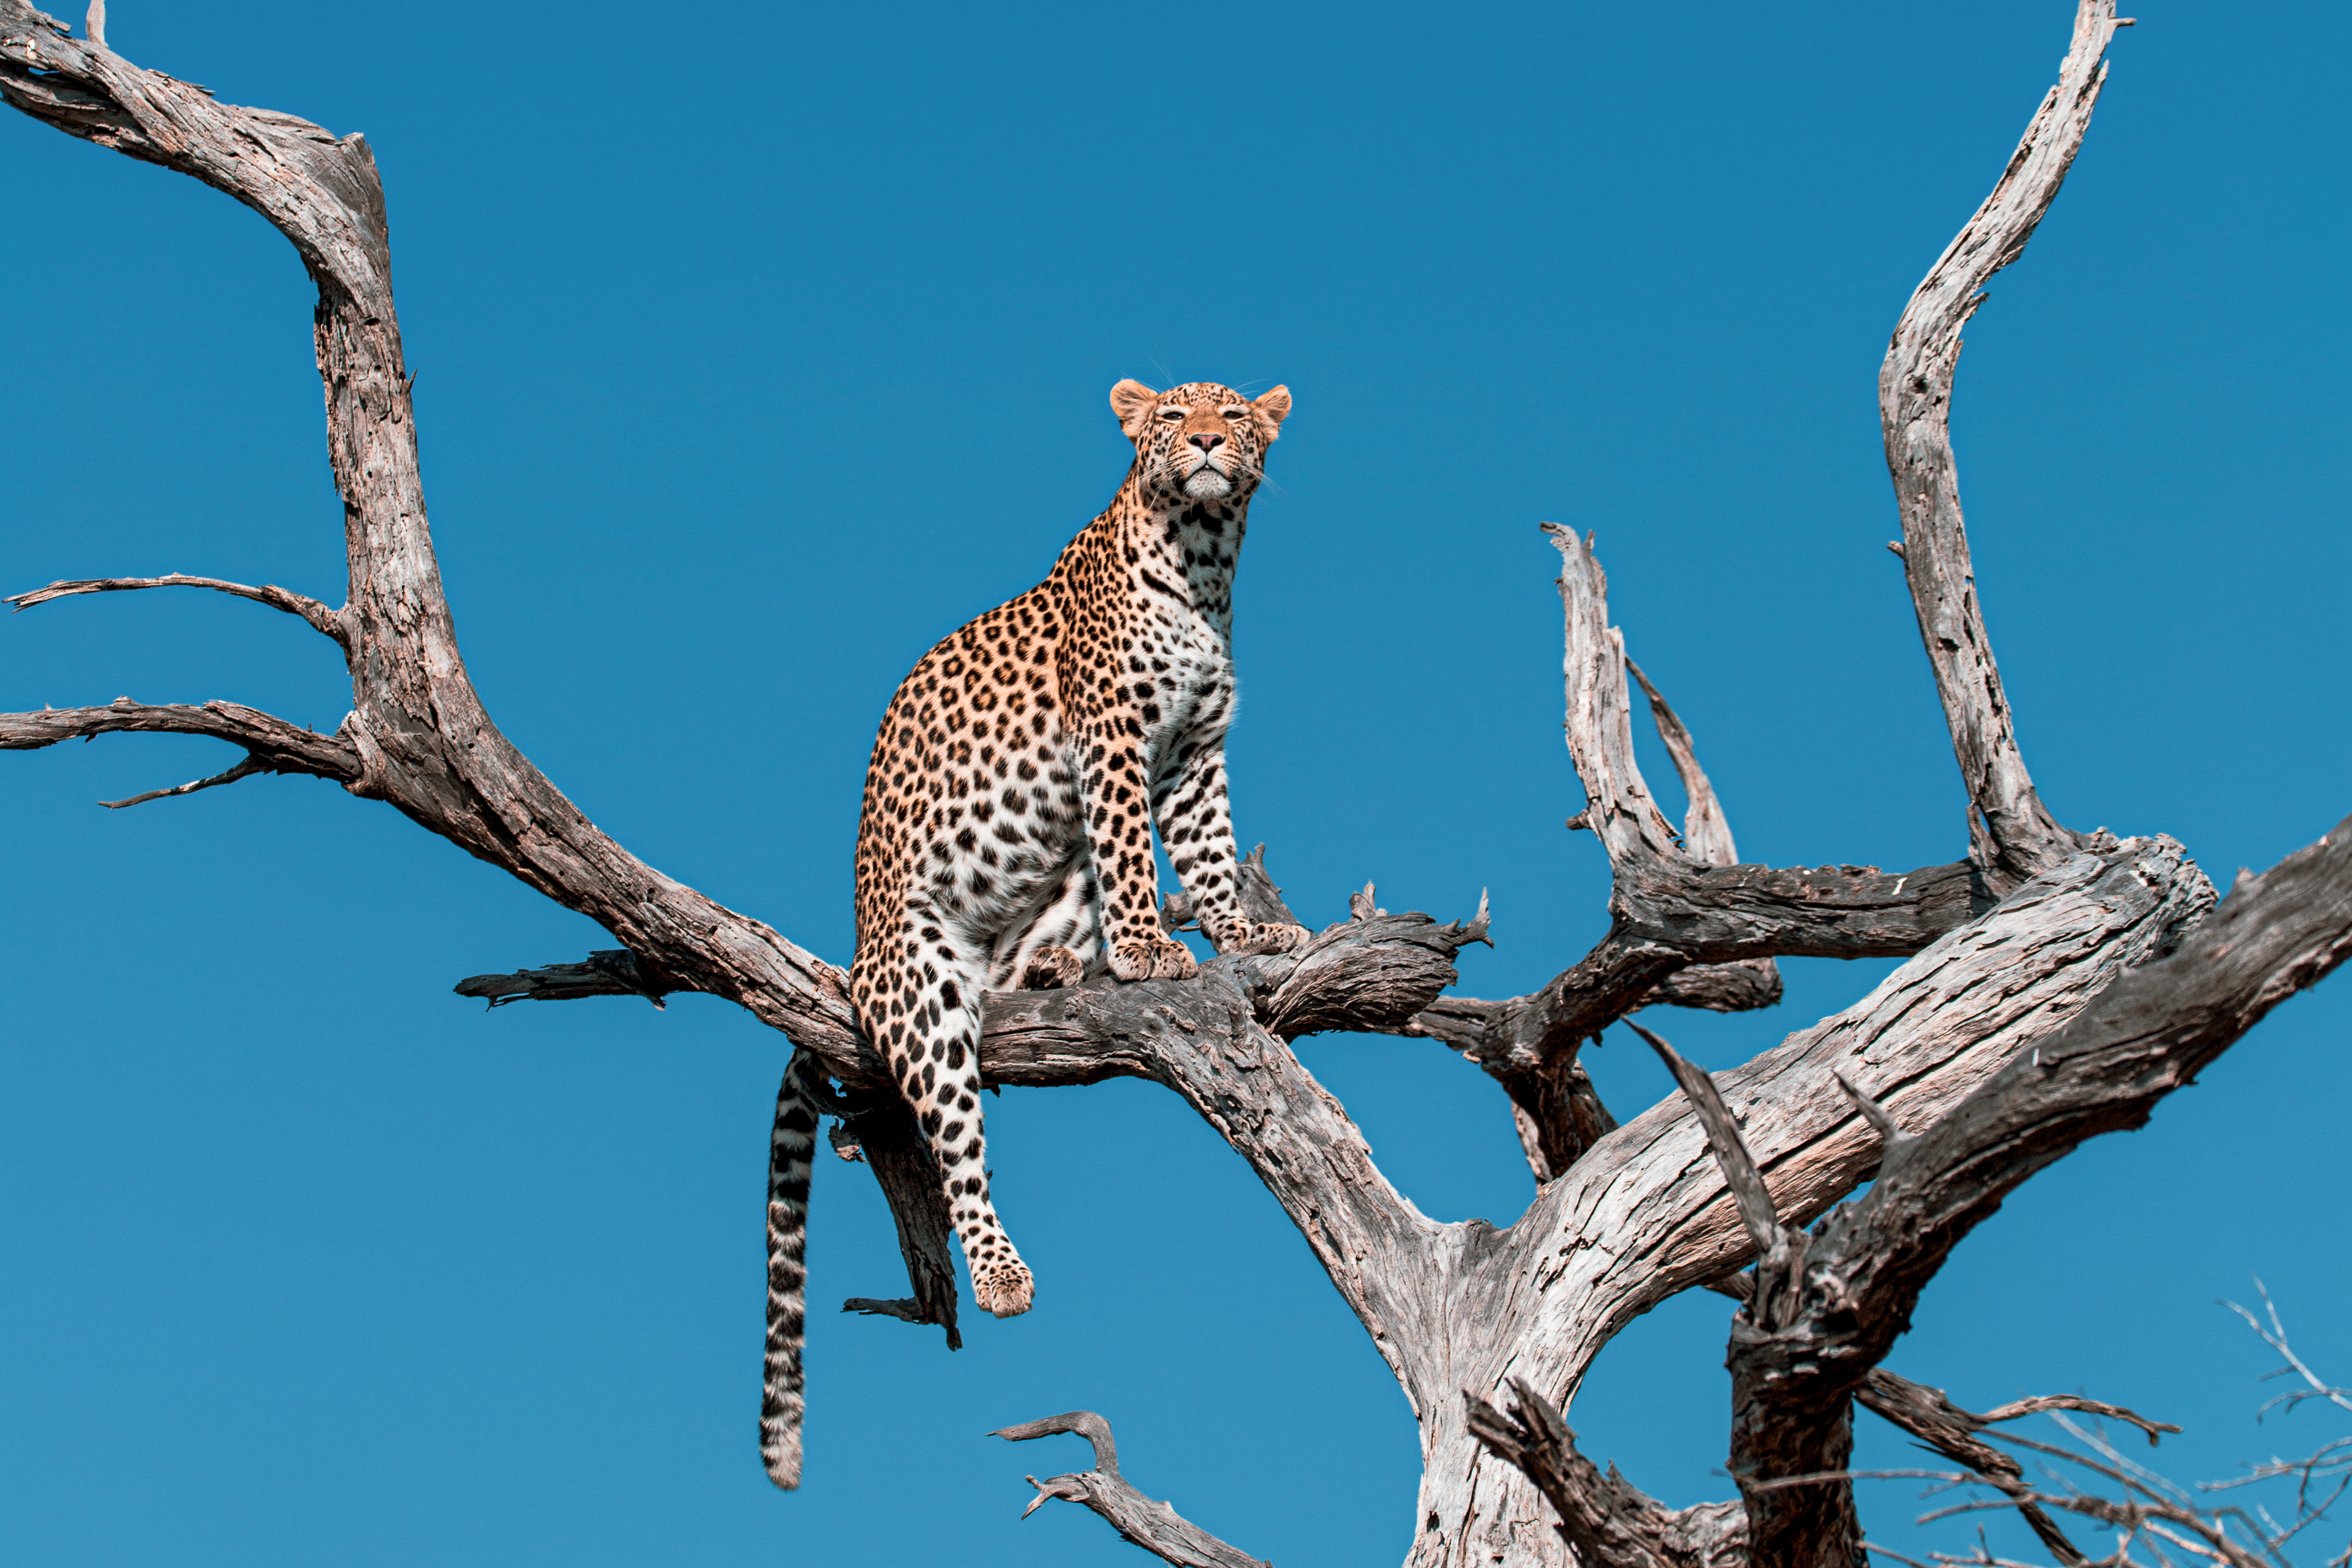 Leopard in Tree 3.jpg